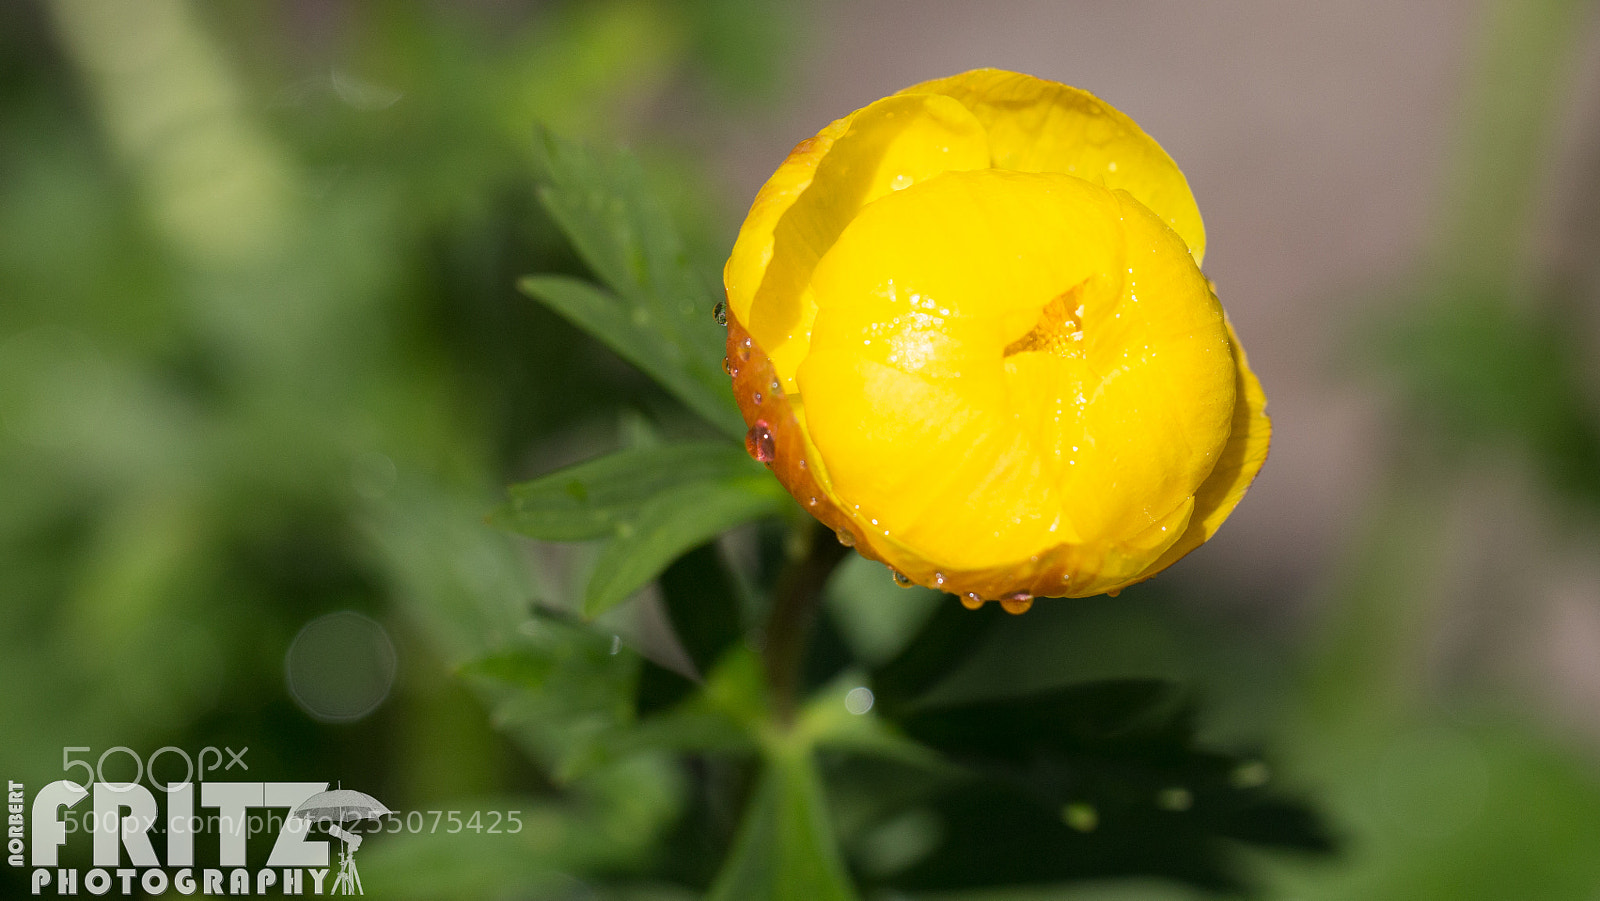 Canon EOS 6D sample photo. Trollblume im botanischen garten photography